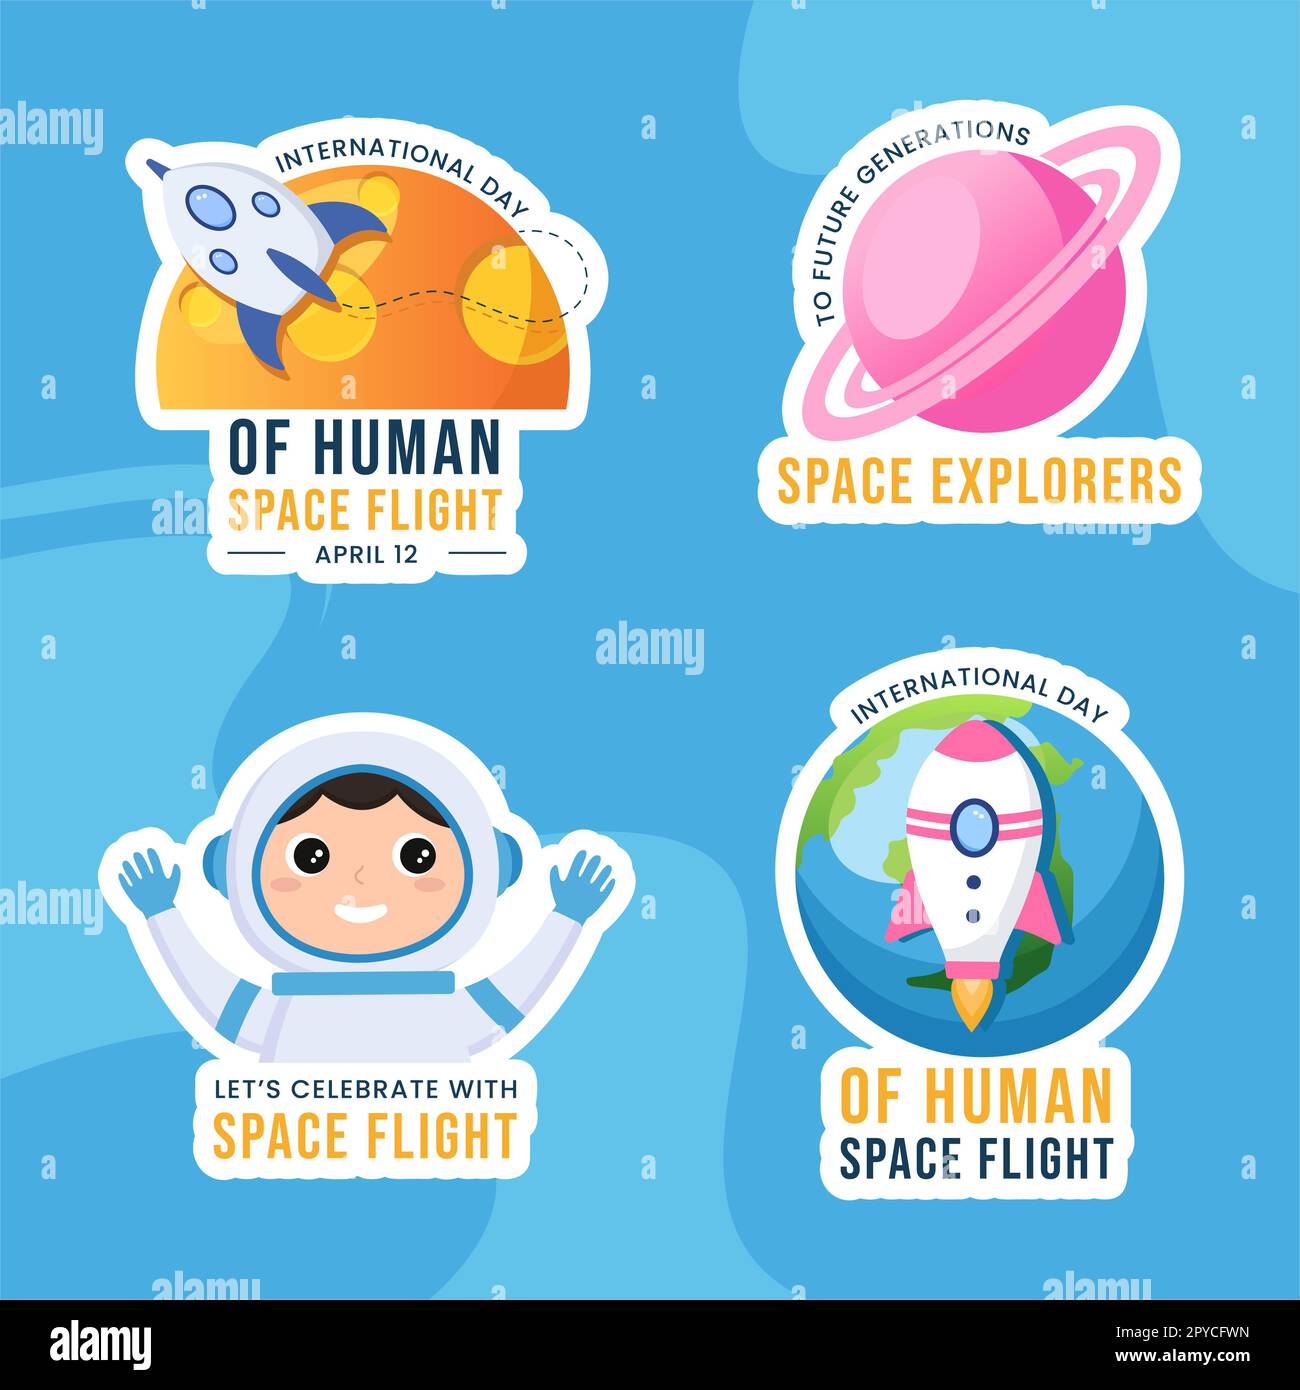 Internacional Día del Vuelo del Espacio Humano Etiqueta plana Dibujado a mano Plantillas Ilustración de fondo Foto de stock